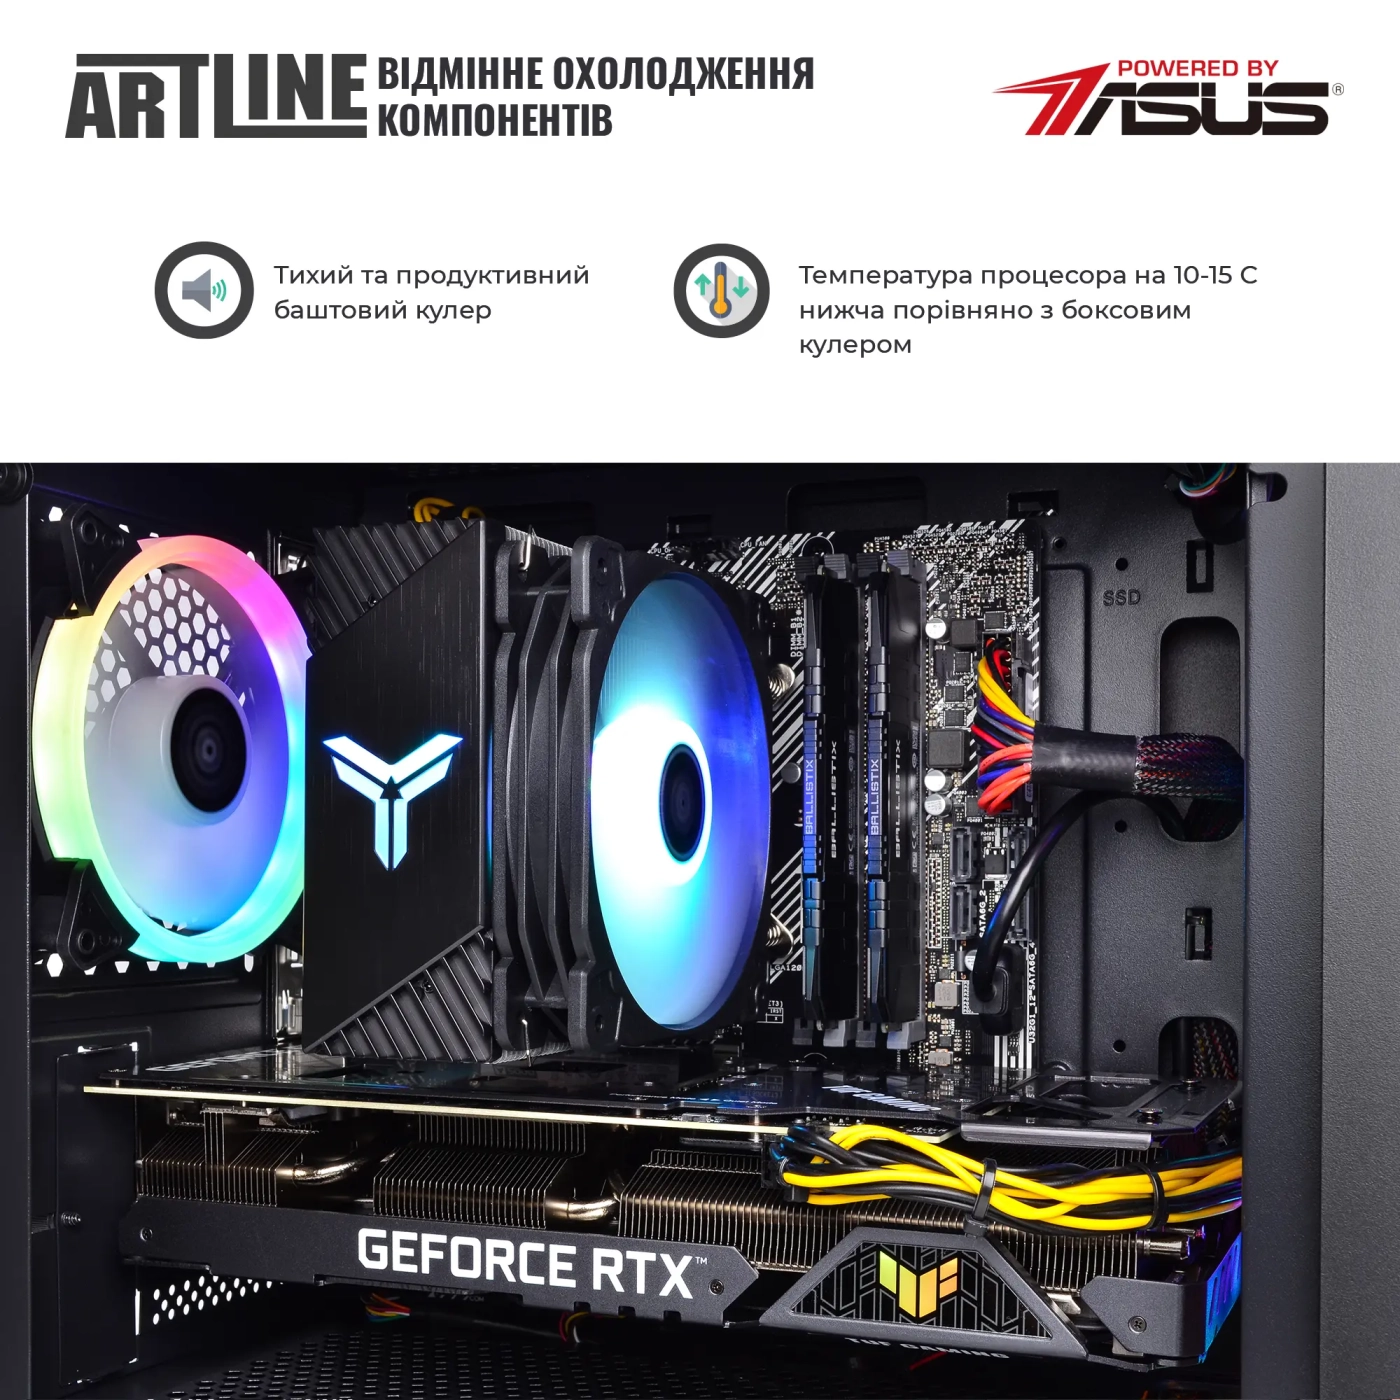 Купить Компьютер ARTLINE Gaming X57v57 - фото 5